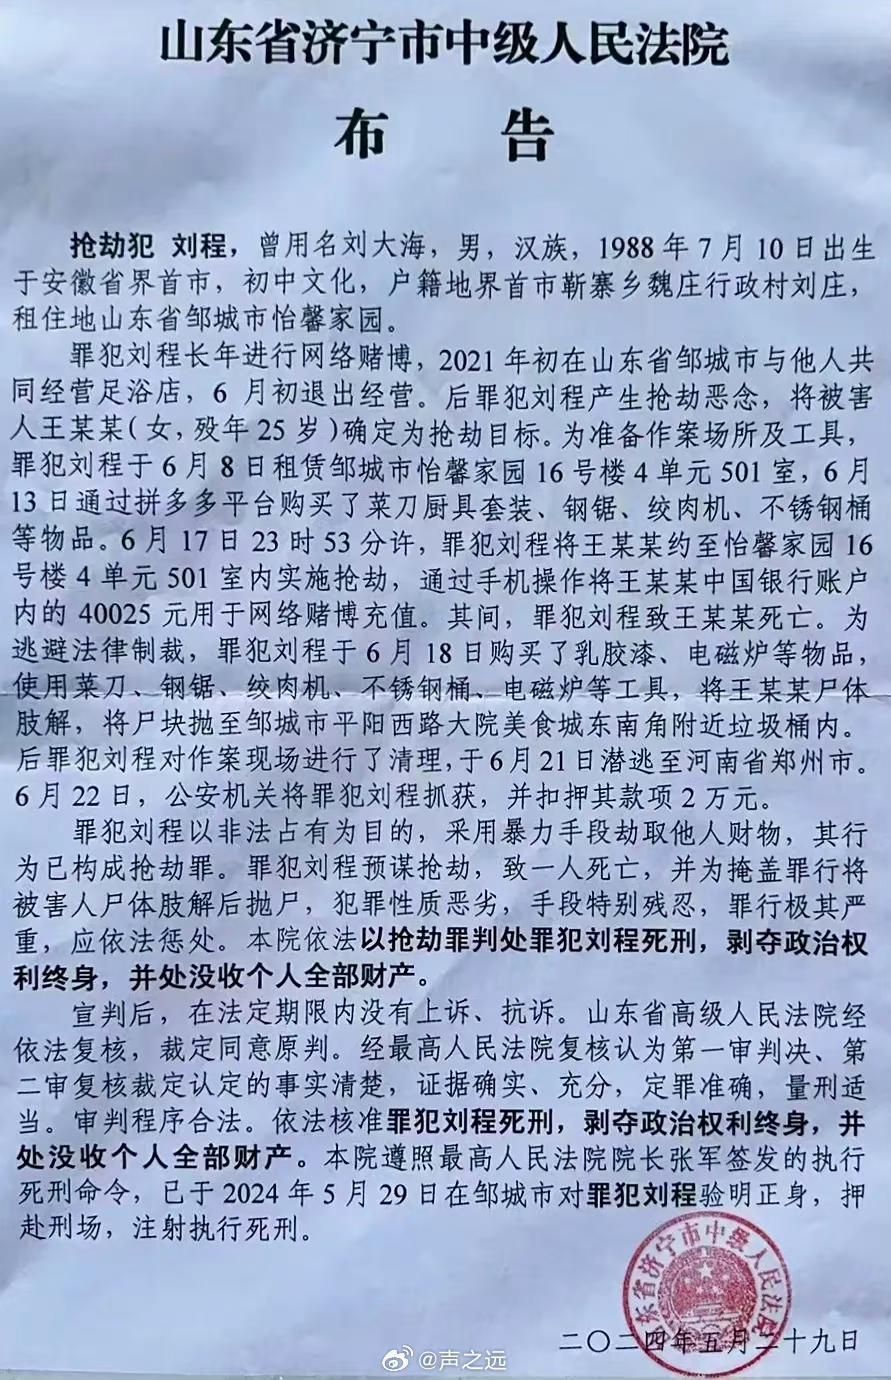 法院公告，抢劫犯刘程29日在邹城被执行死刑。